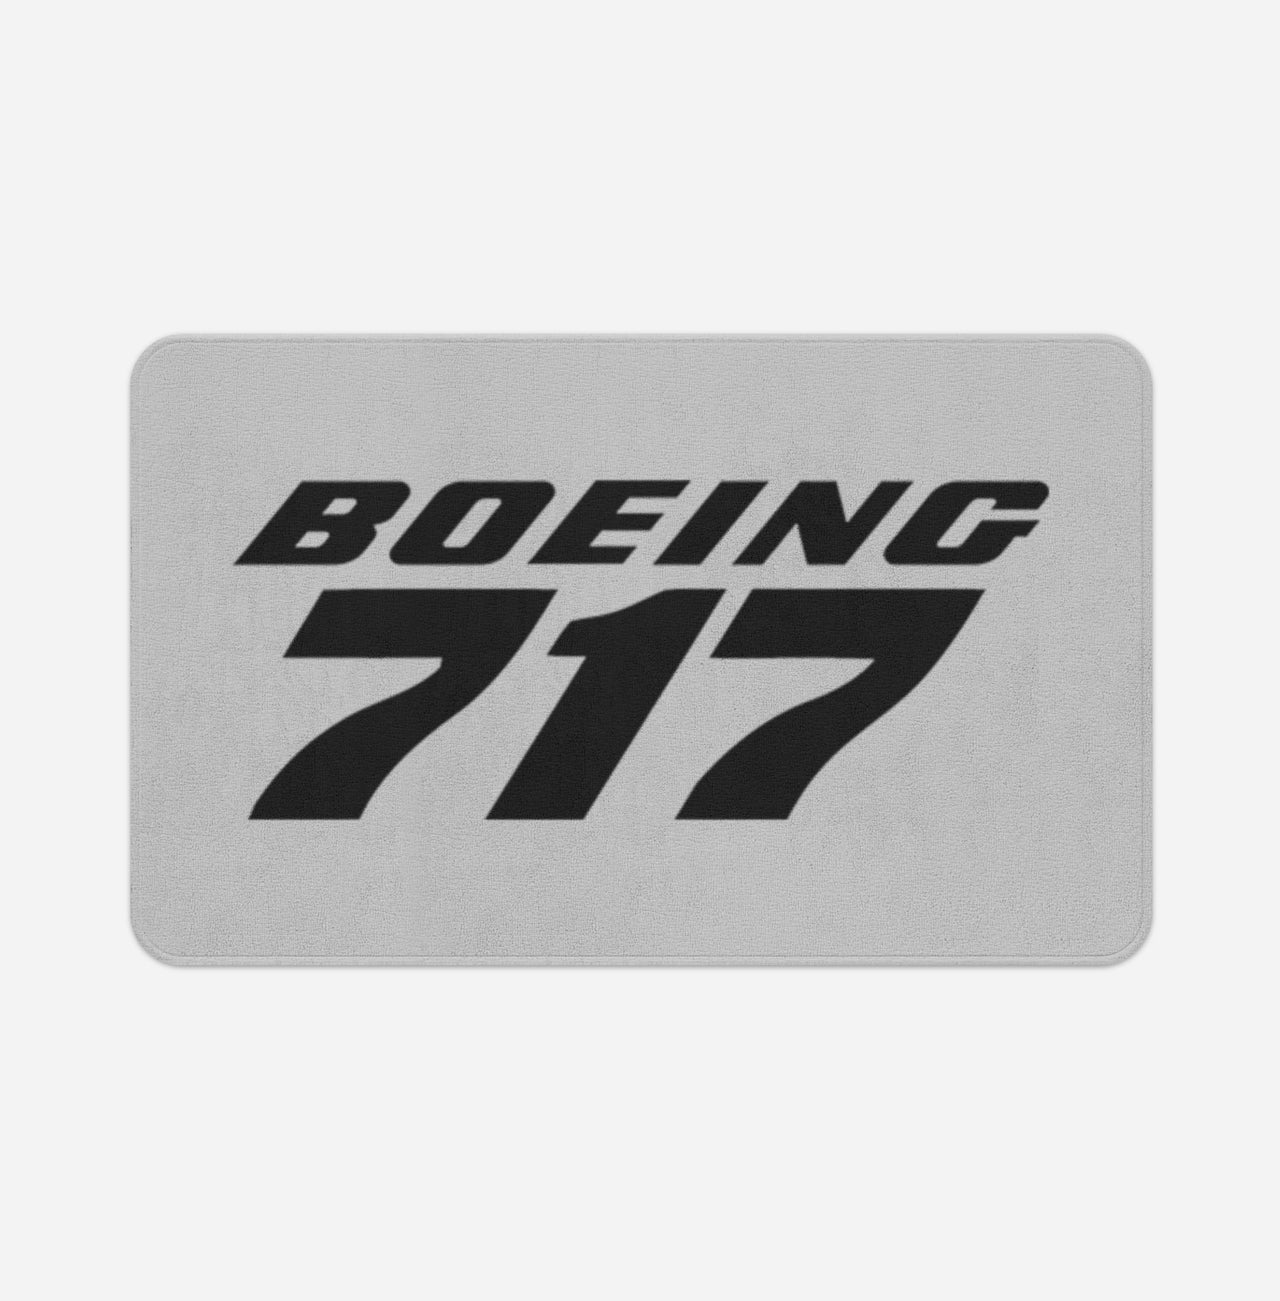 Boeing 717 & Text Designed Bath Mats